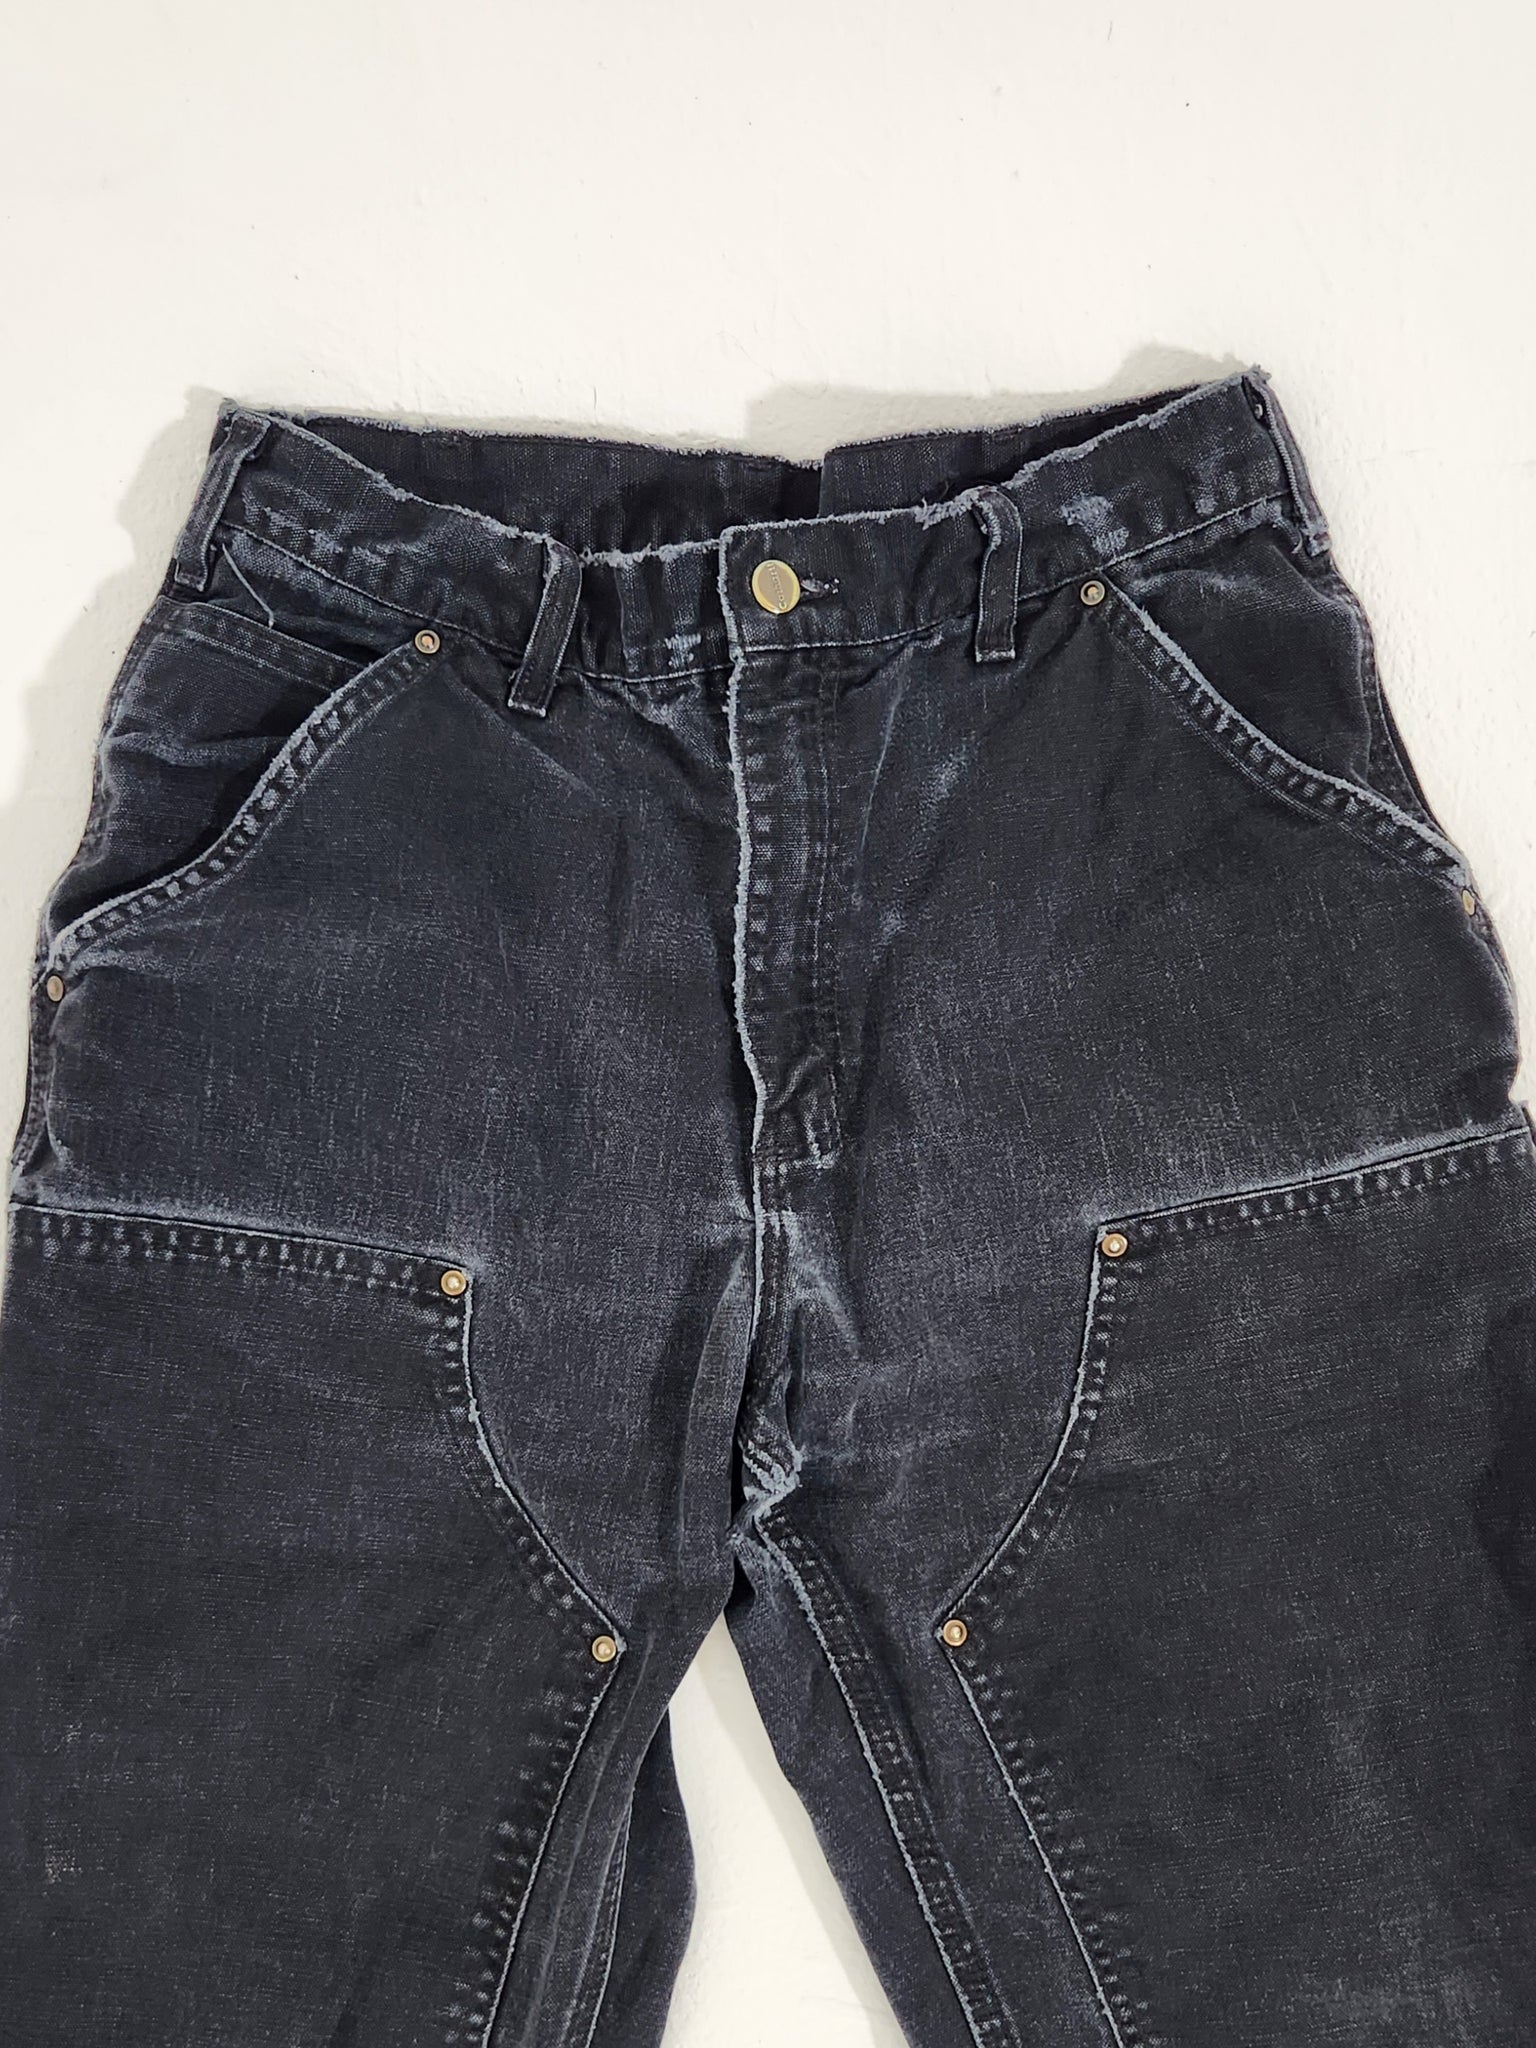 Men's Vintage Carhartt Double Knee Brown Work Pants Size 38x30